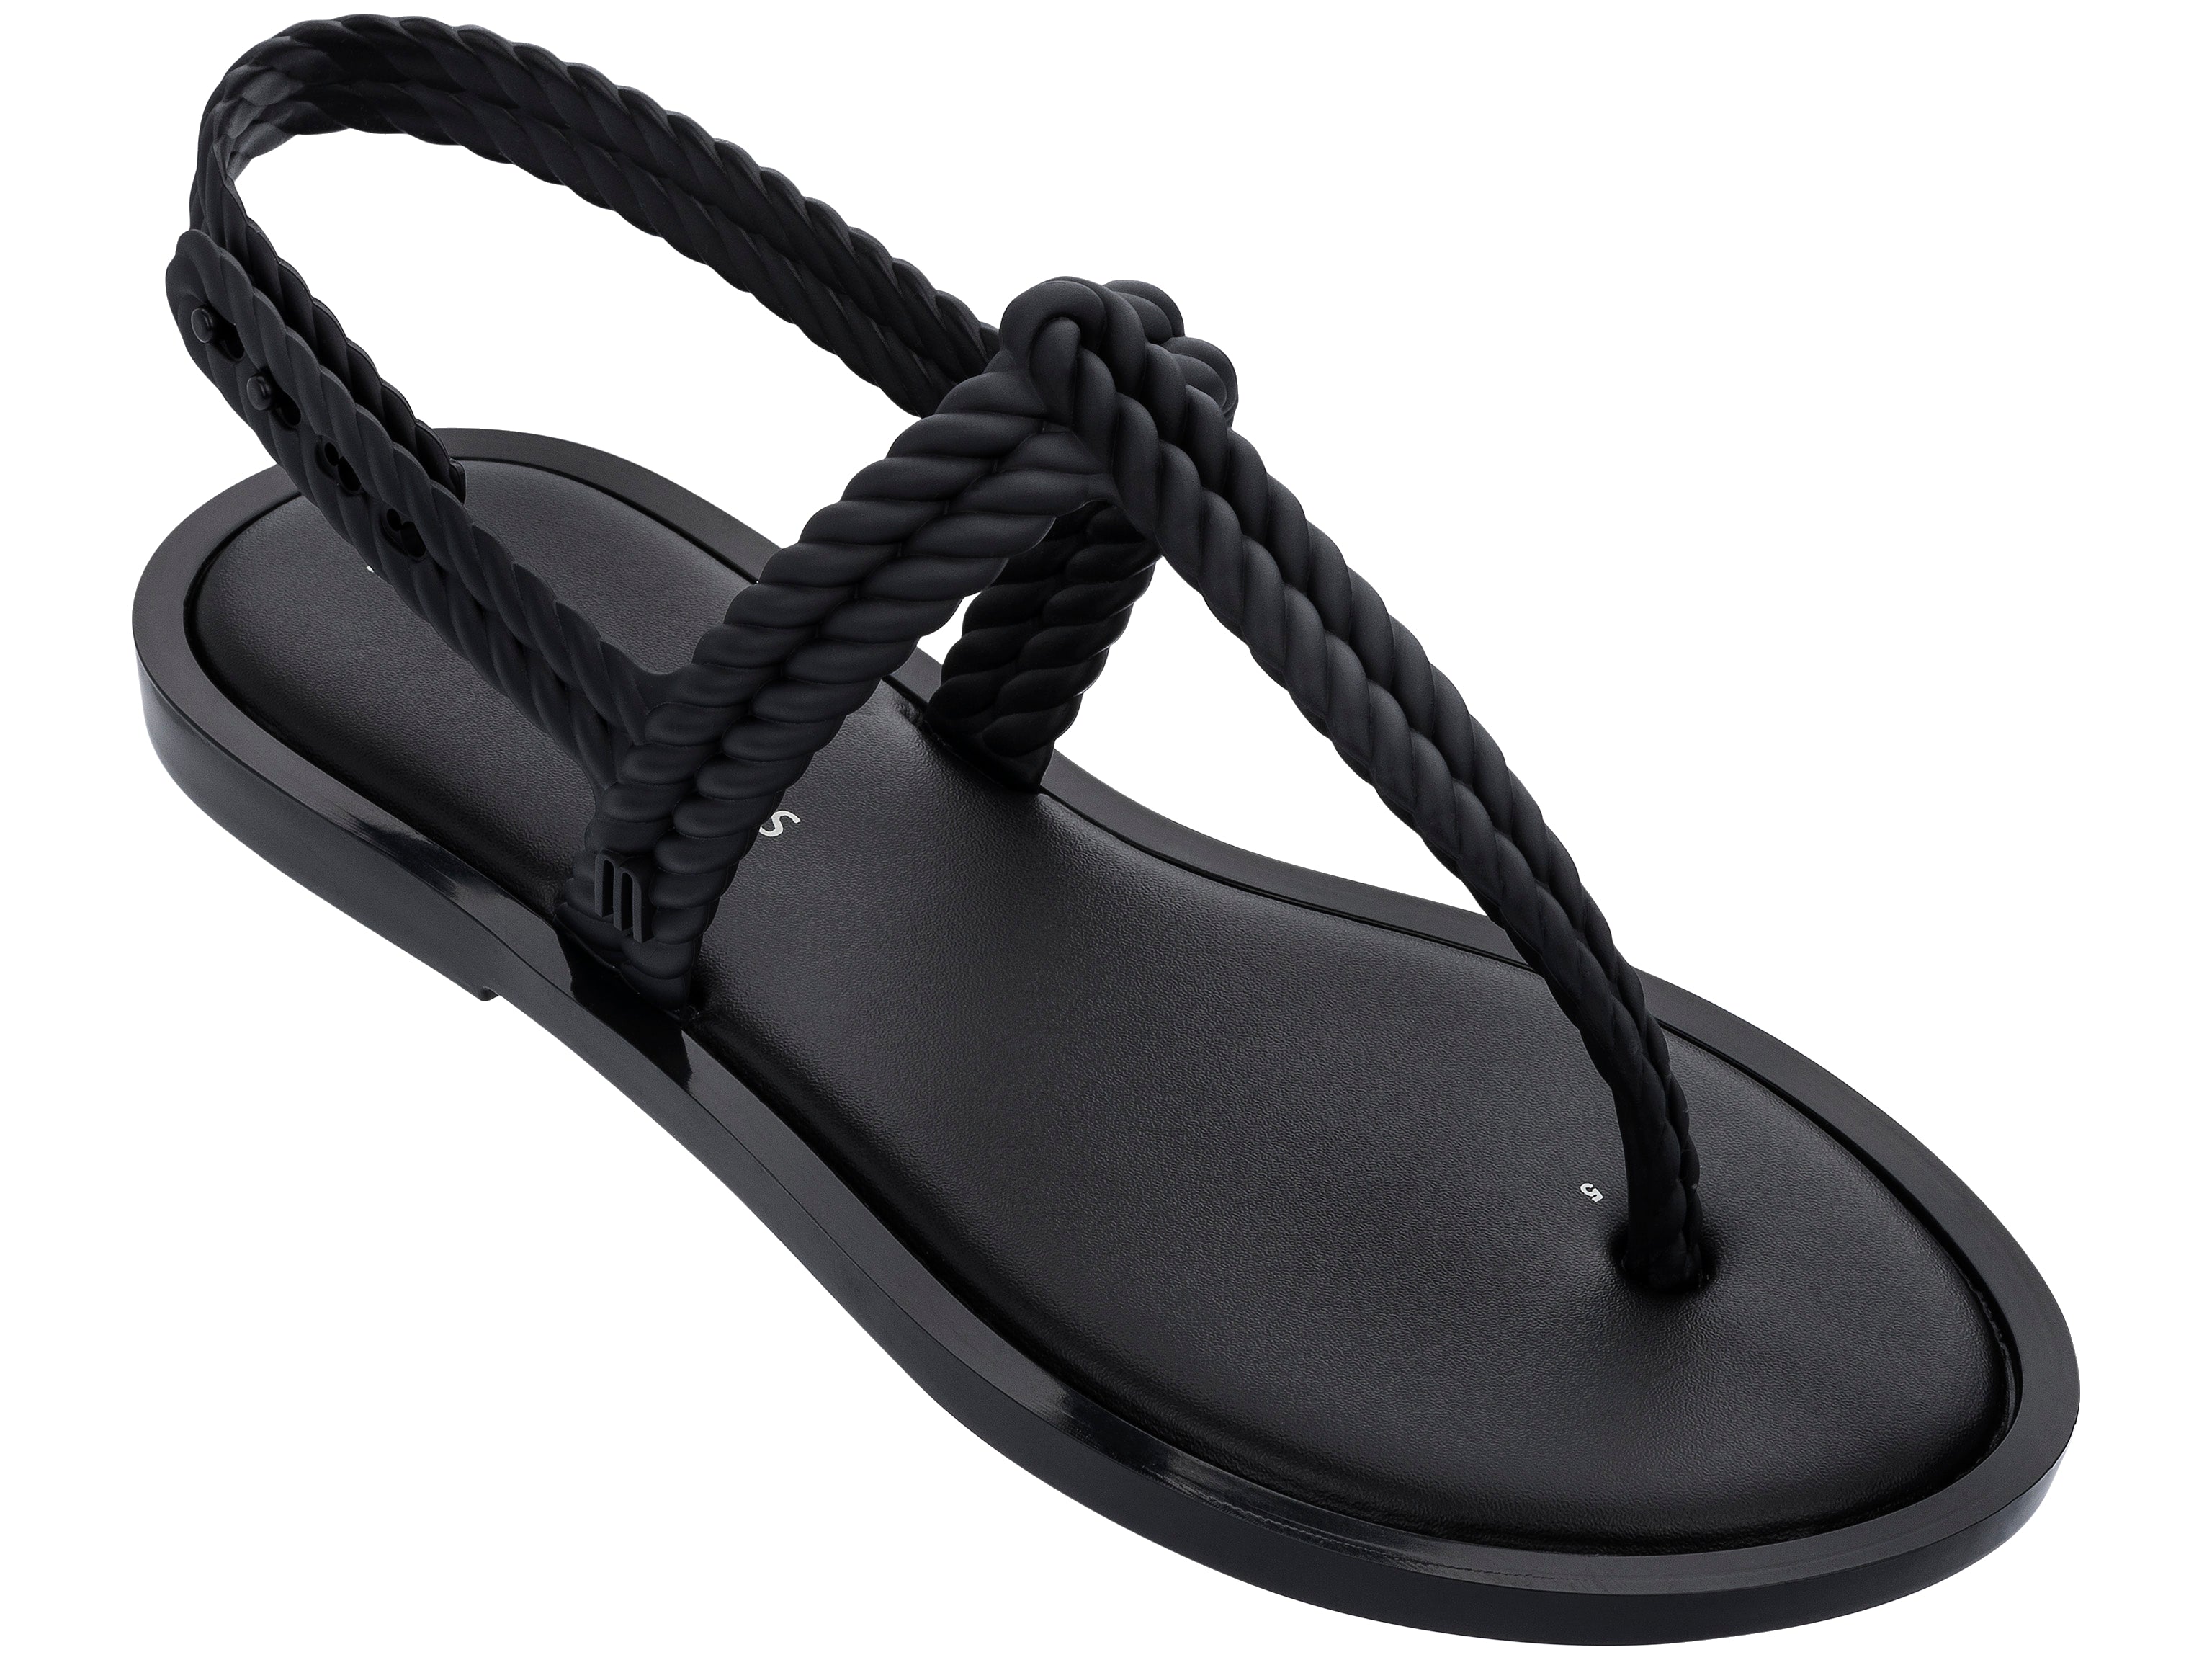 sandale noire plate